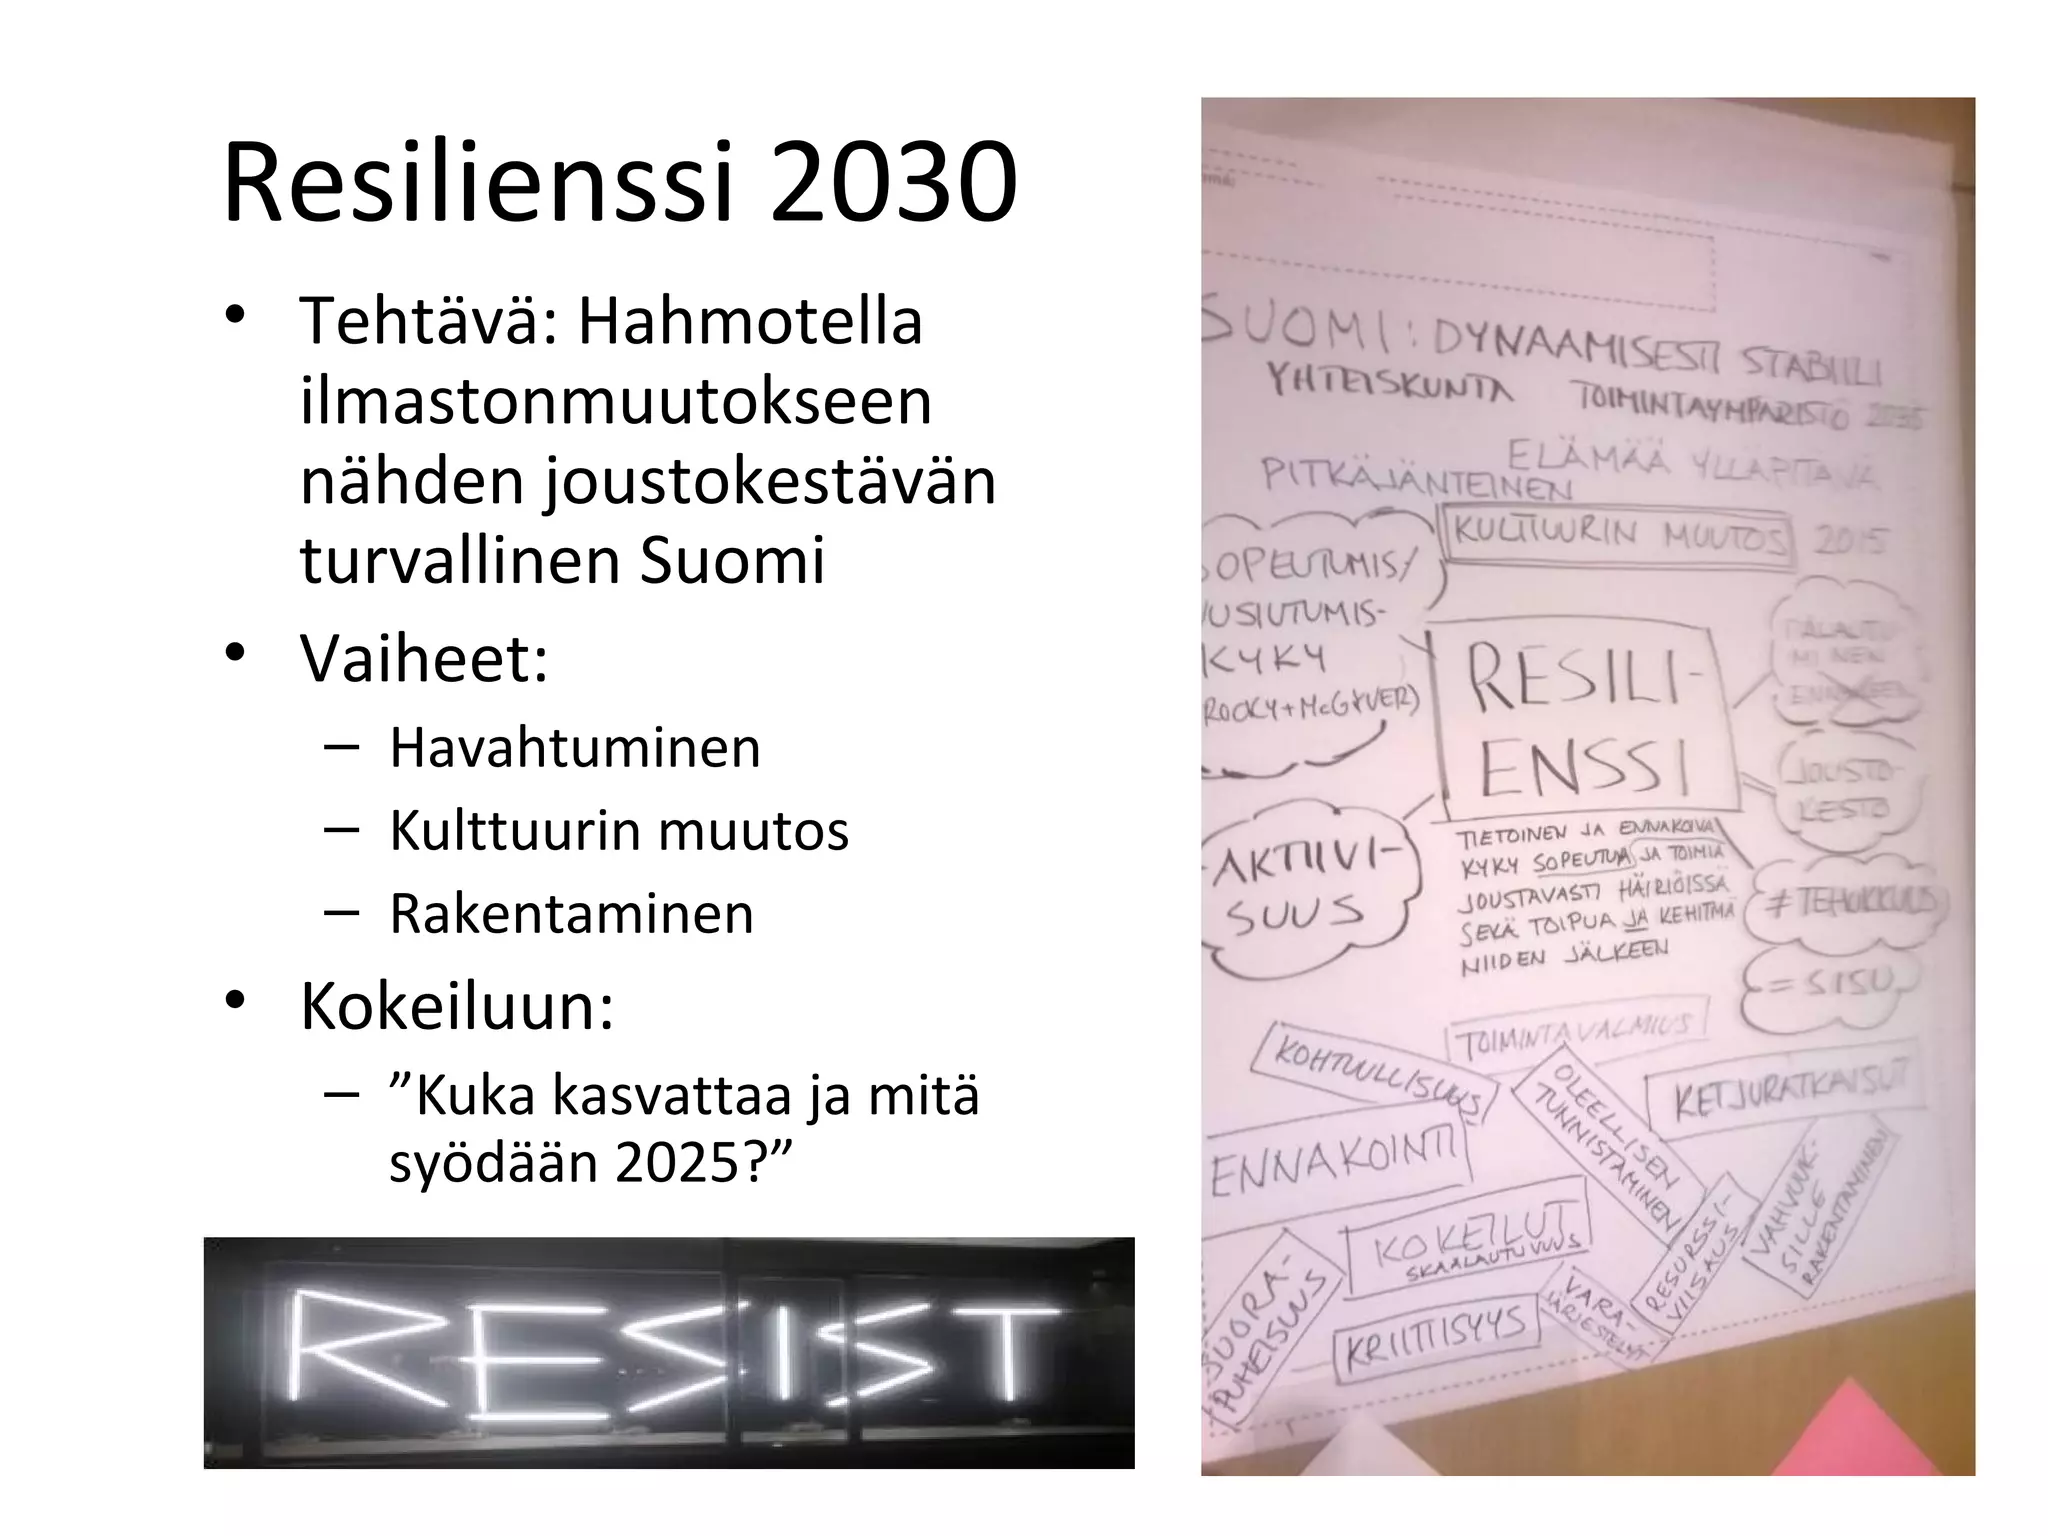 Mika Hyytiäinen - Tulevaisuuden resilientti ruoka